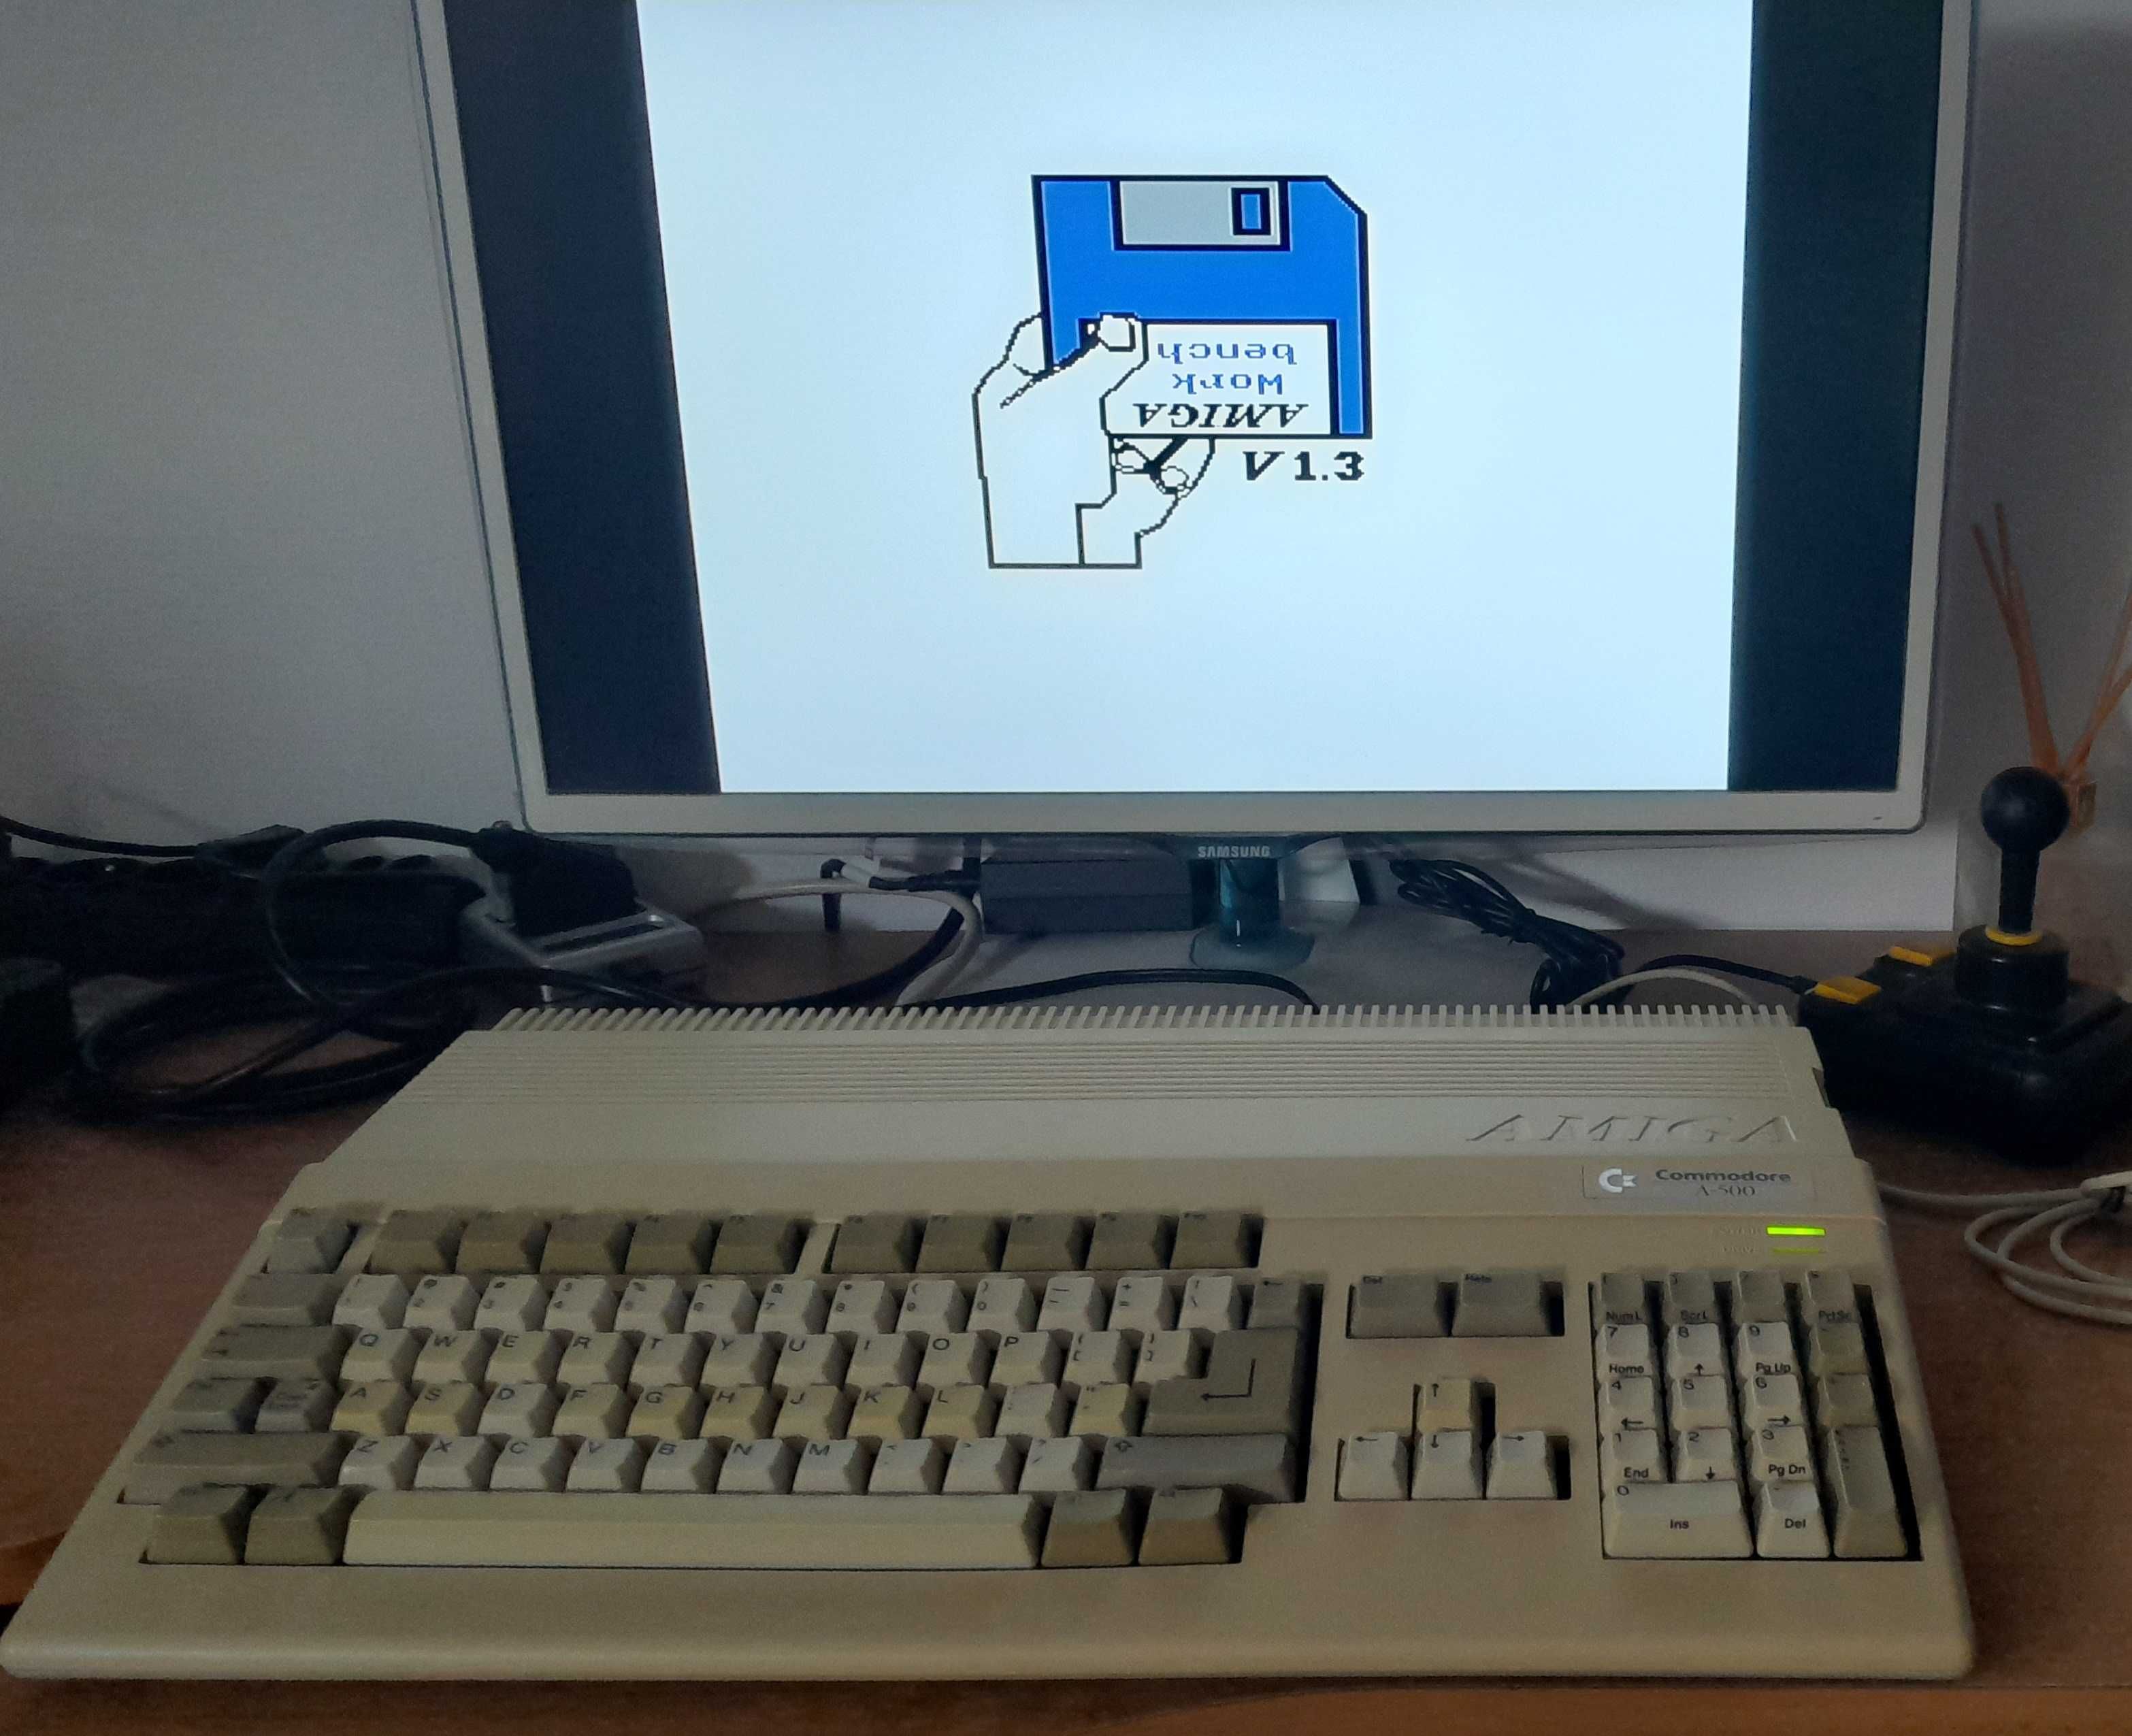 Amiga 500 z płytą gł. 500+